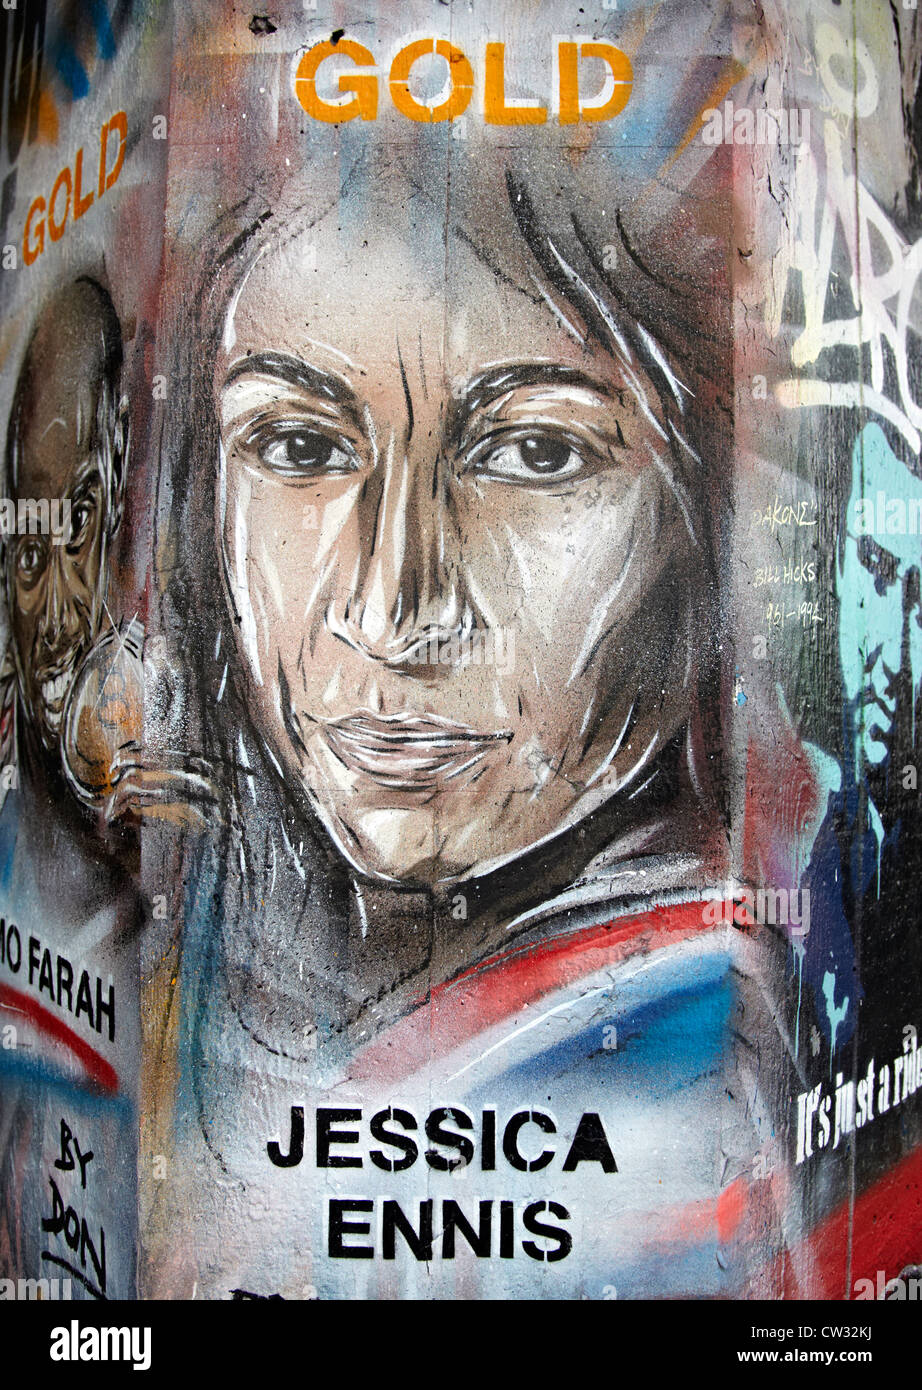 Jessica Ennis Olympic Gold Medal Winner Graffiti London UK Stock Photo